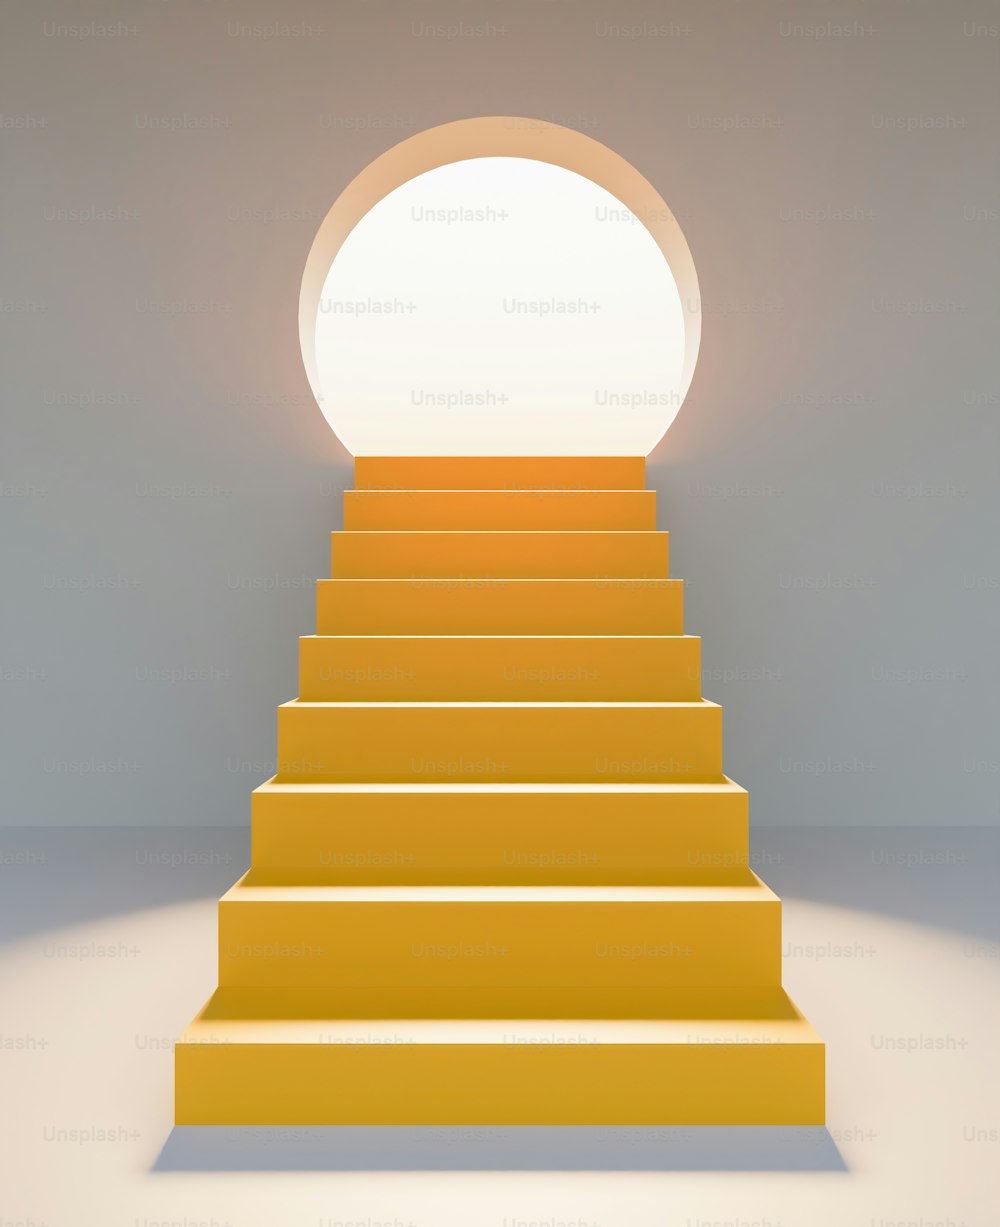 태양의 눈부심으로 밝혀진 둥근 문이 있는 추상적인 노란색 계단. 제품 발표. 3D 렌더링